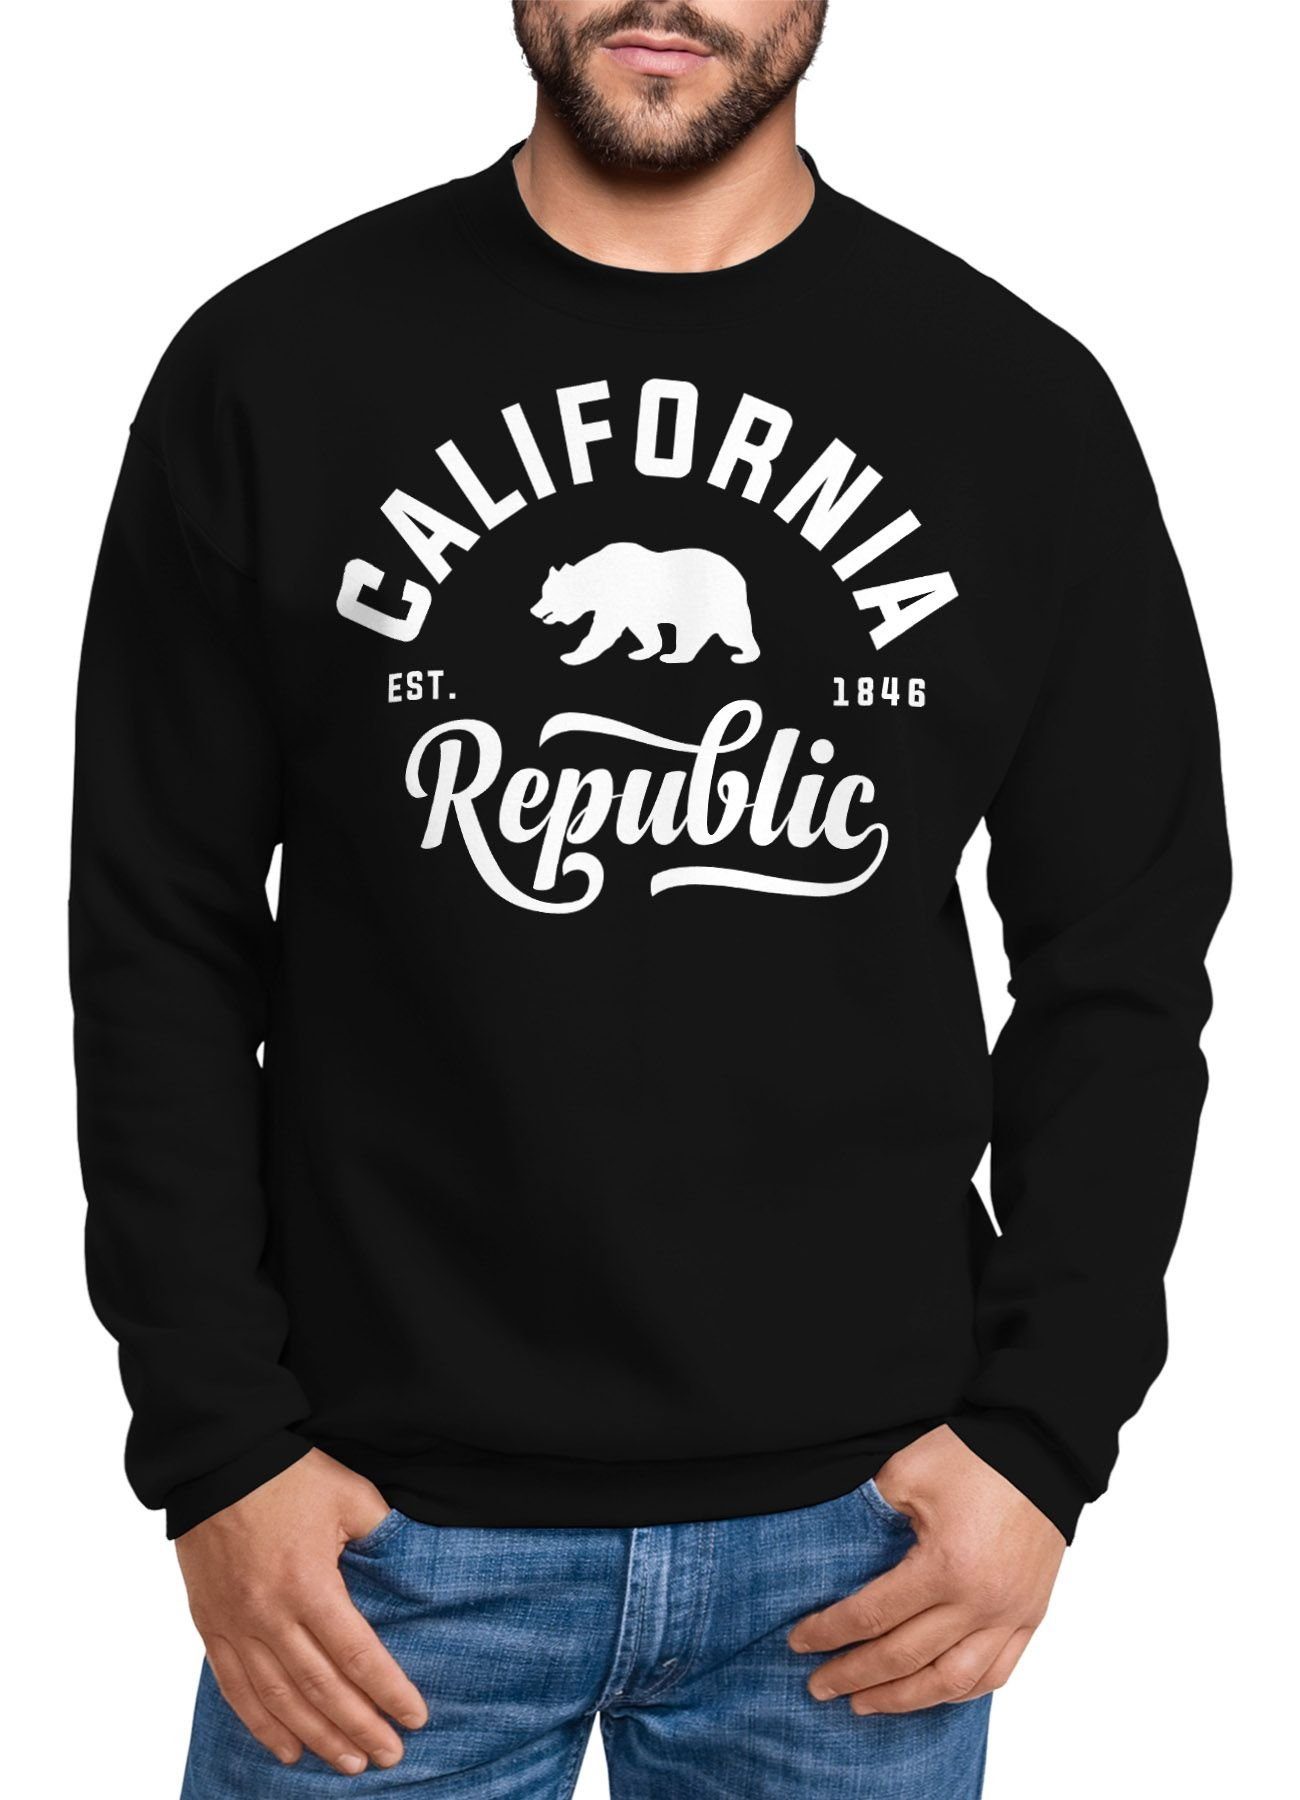 Neverless Sweatshirt Schöner California Republic Herren Pullover Sweatshirt Neverless®